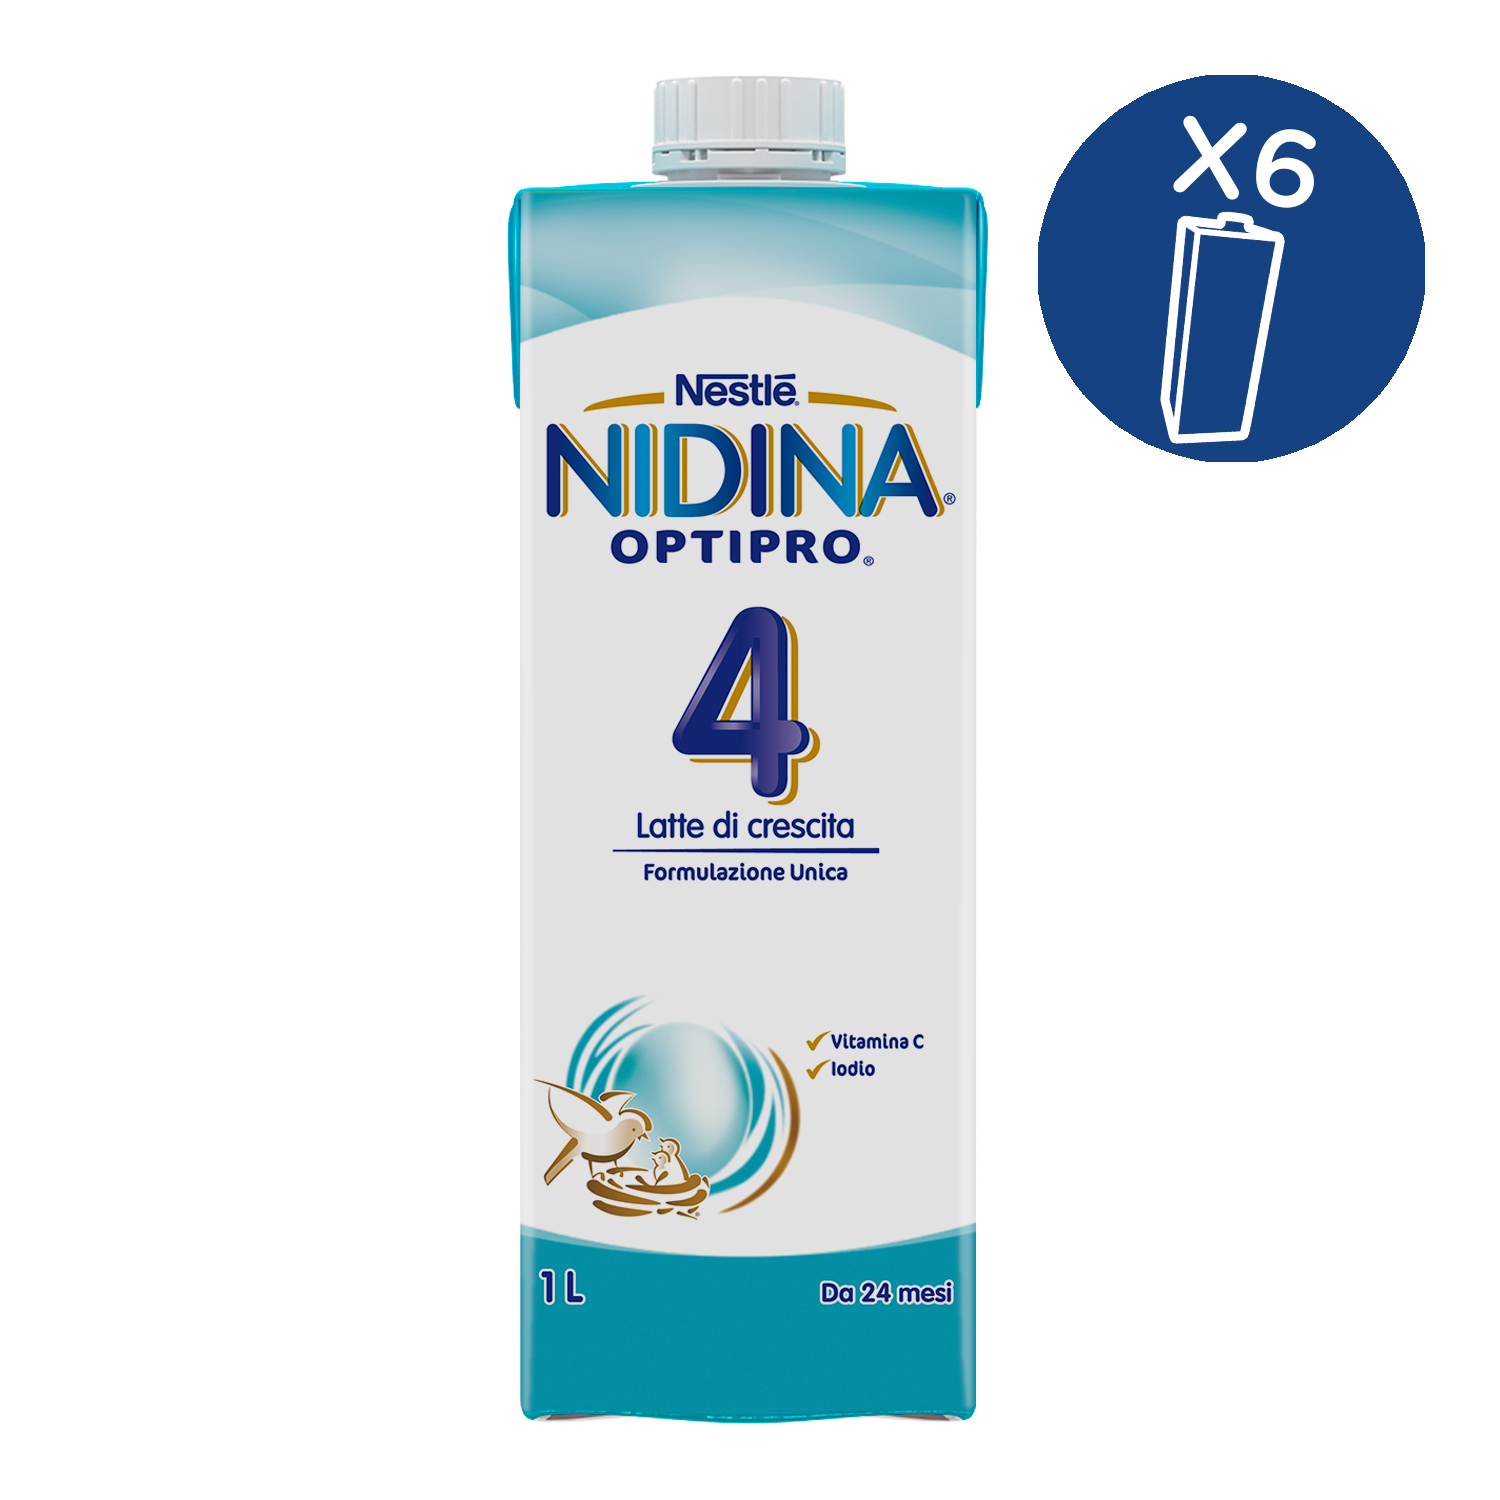 Nestlé nidina optipro 4 latte di crescita liquido da 24 mesi 6 brick da 1l - Nestlé Nidina